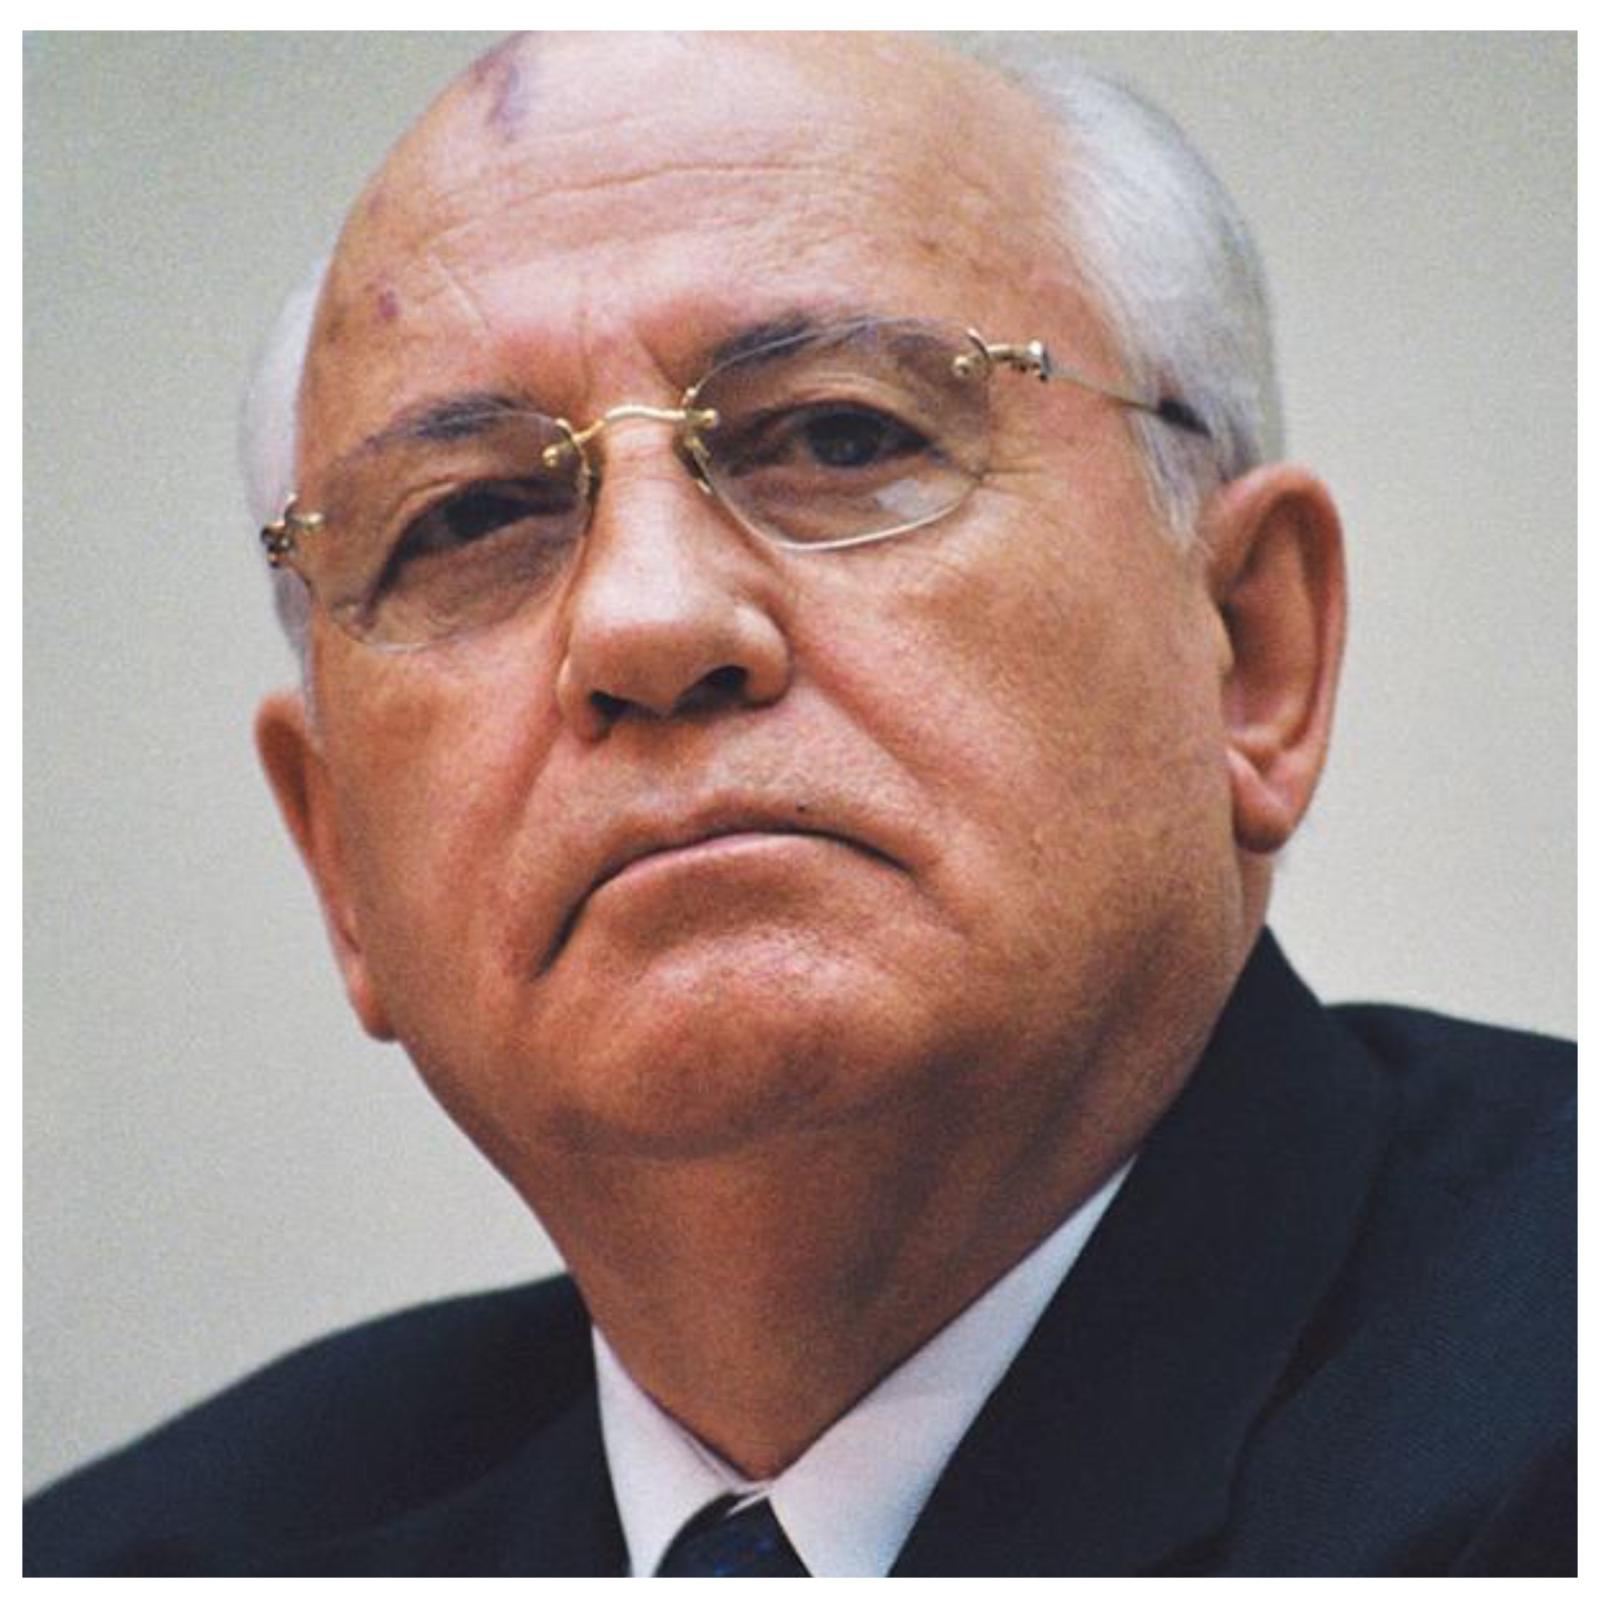 Ушел из жизни Михаил Горбачев